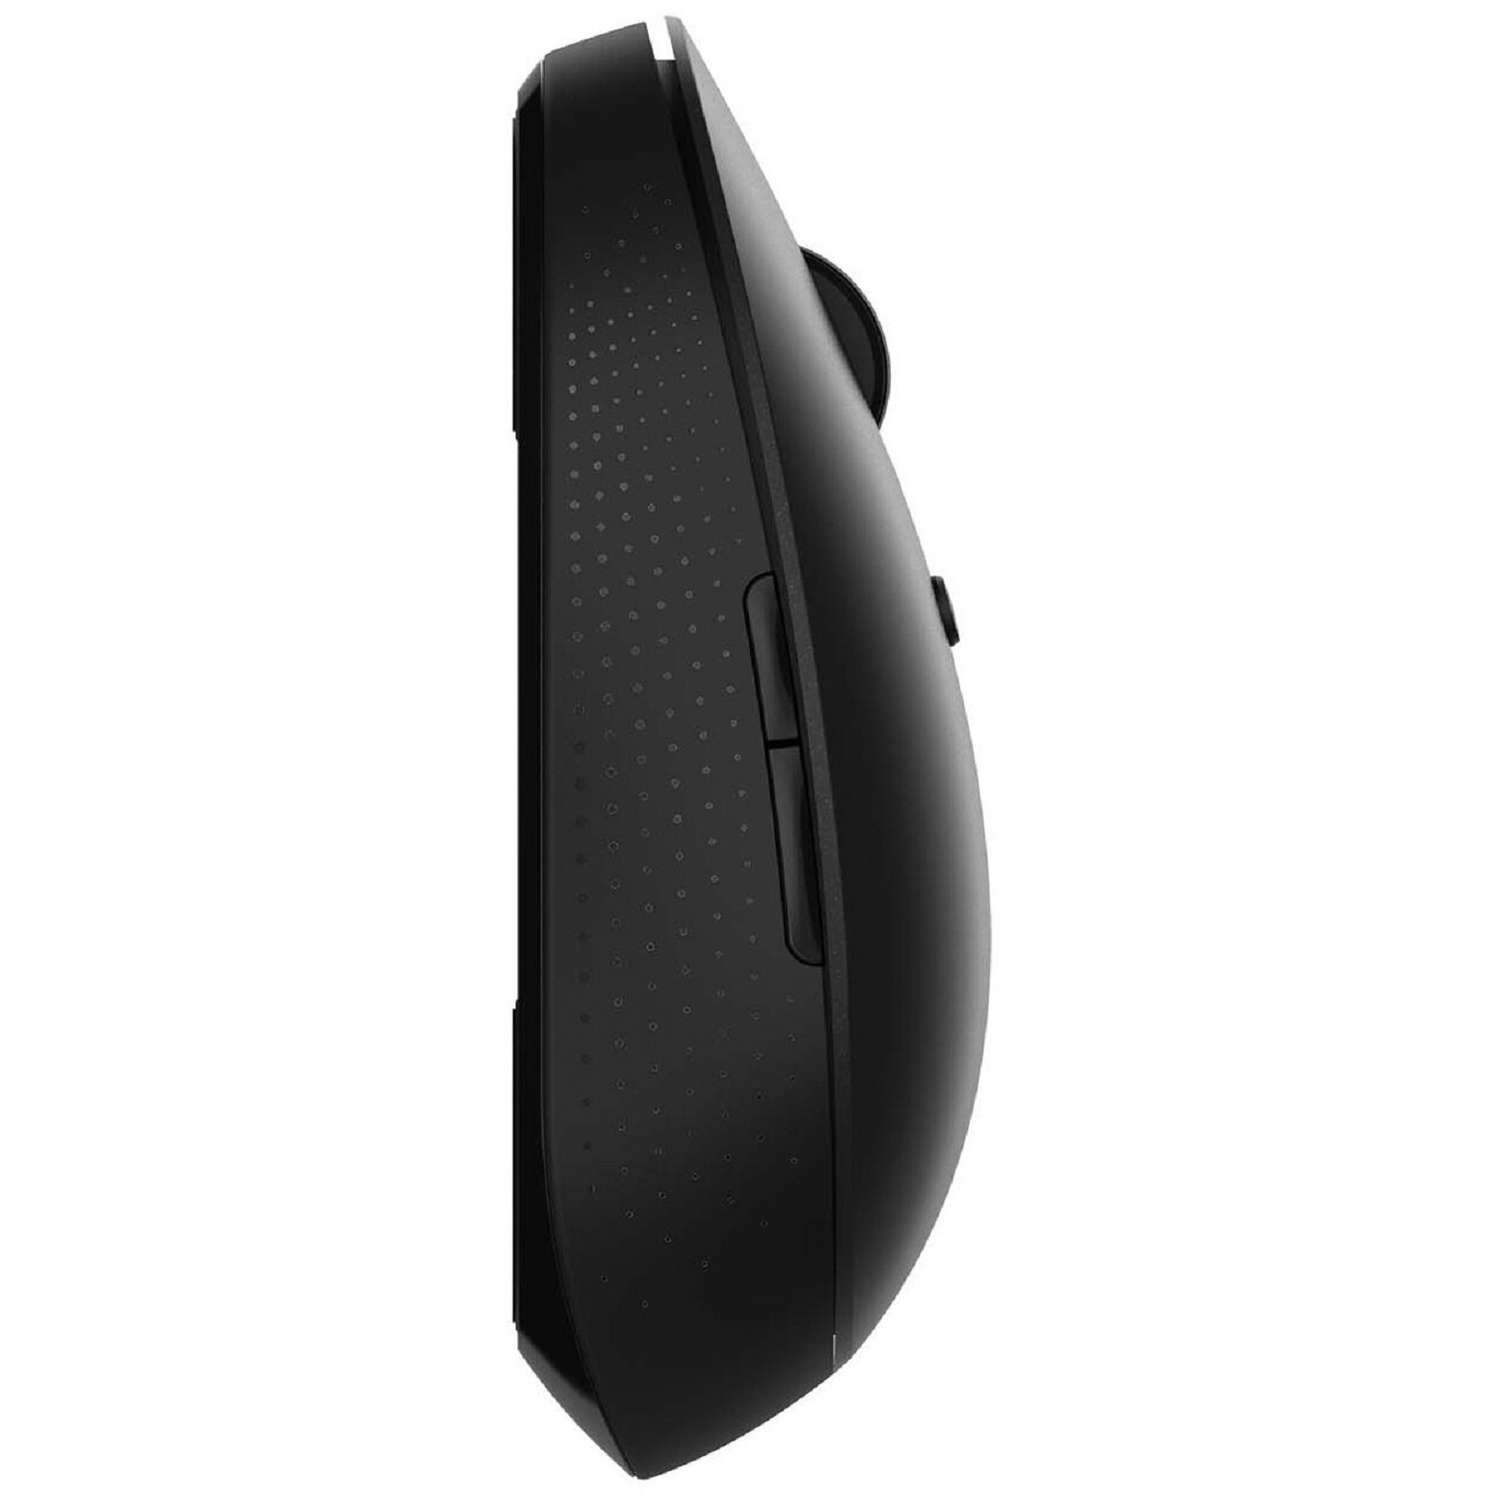 Мышь XIAOMI Mi Dual Mode Wireless Mouse Silent Edition беспроводная 1300 dpi usb чёрная - фото 5